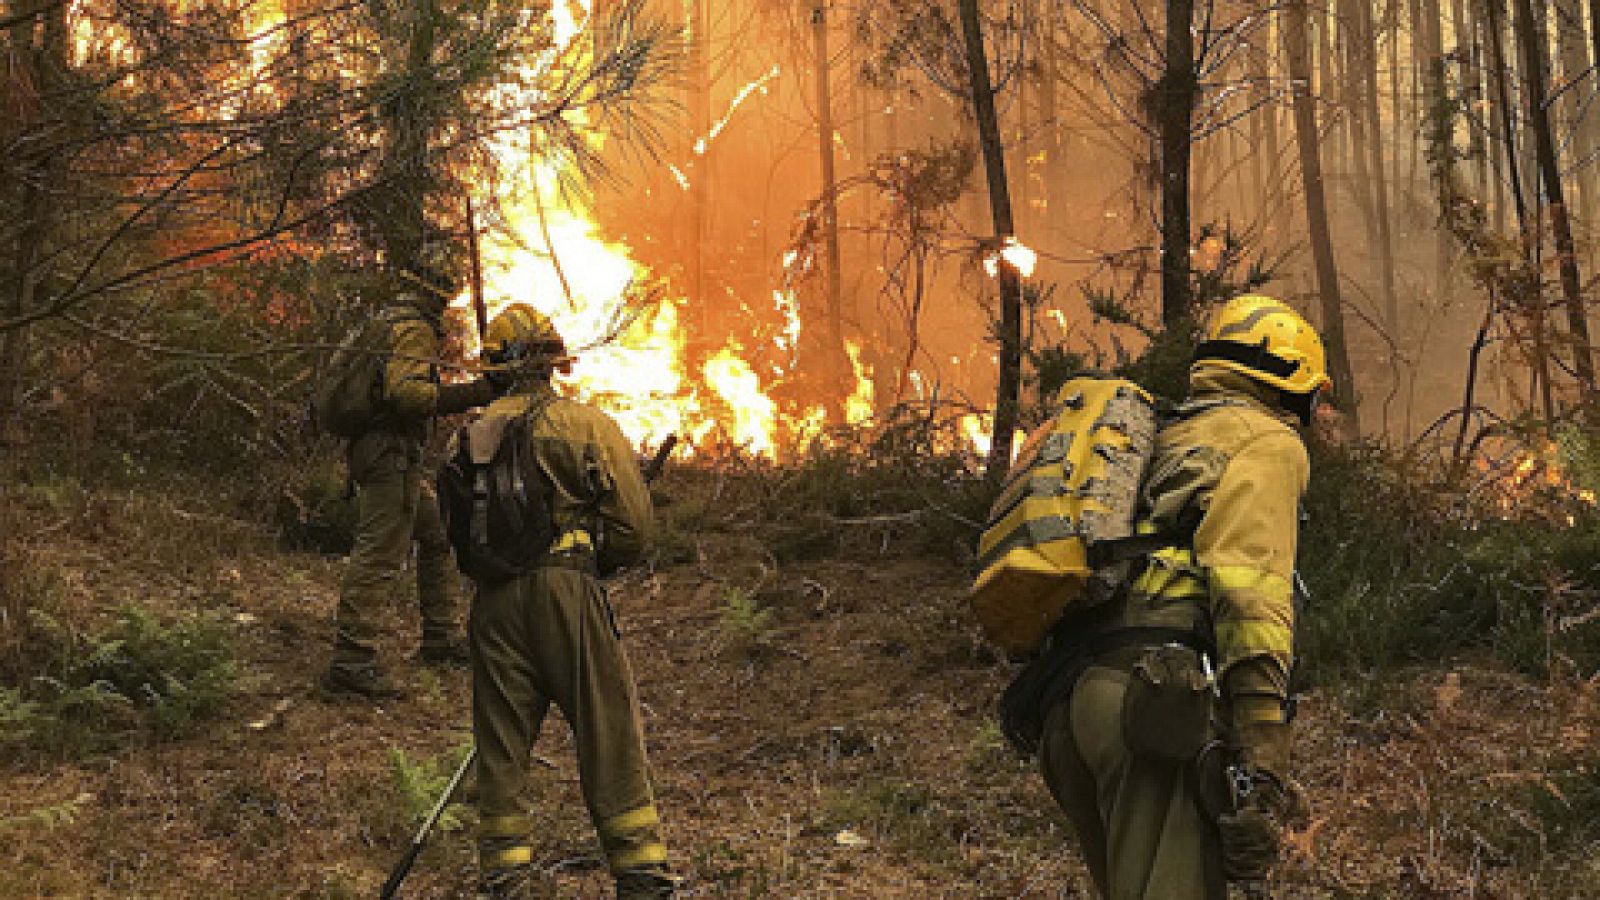 Incendios en Galicia - Once incendios forestales amenazan zonas pobladas en Pontevedra, Ourense y Lugo